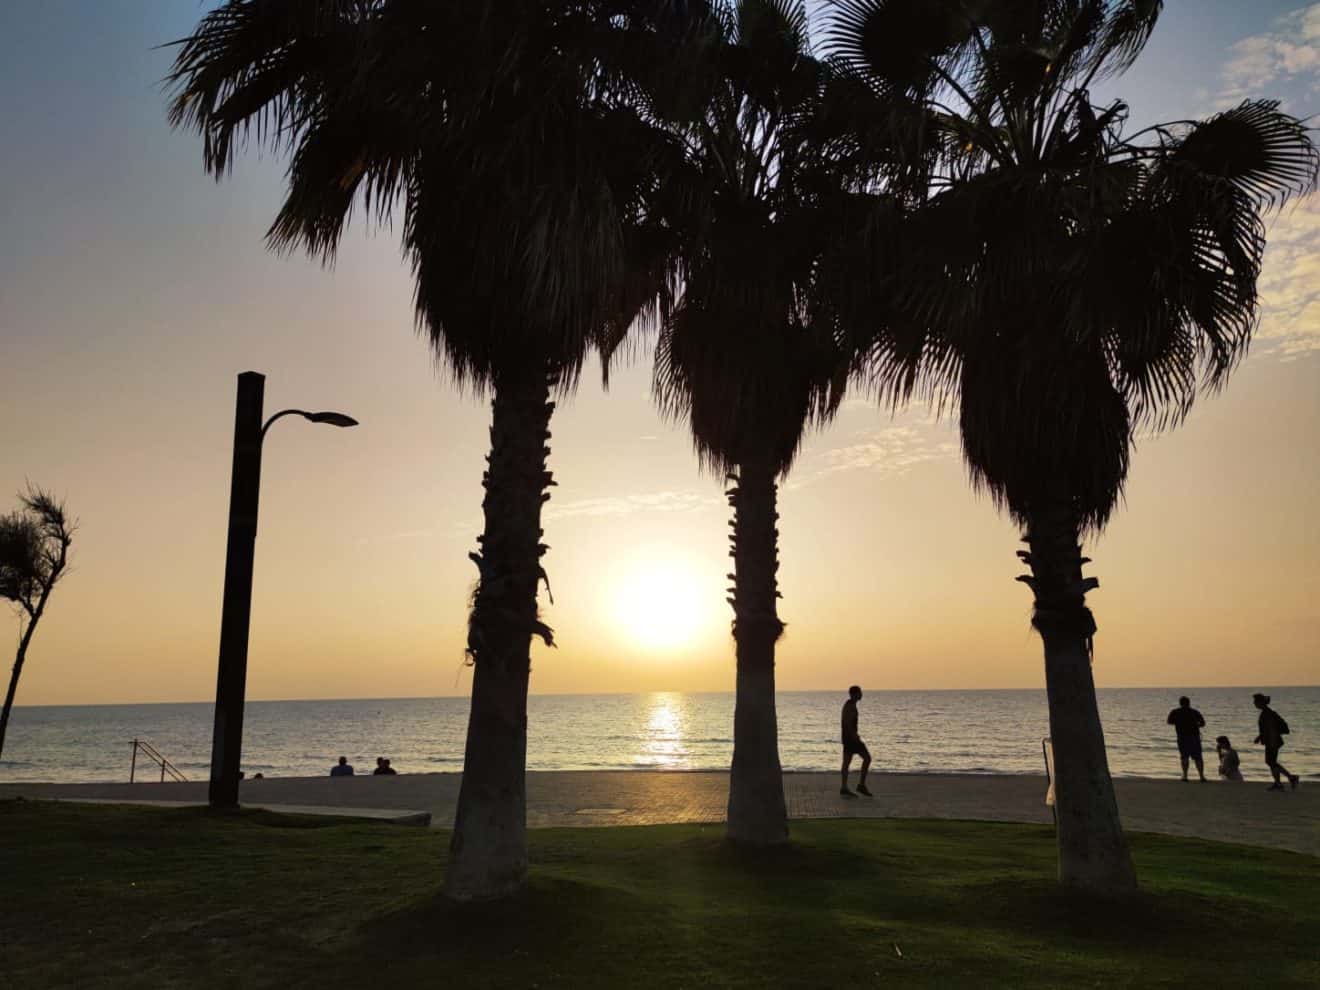 טיילת החוף בחיפה, כל מילה מיותרת | צילום: חדשות NWS